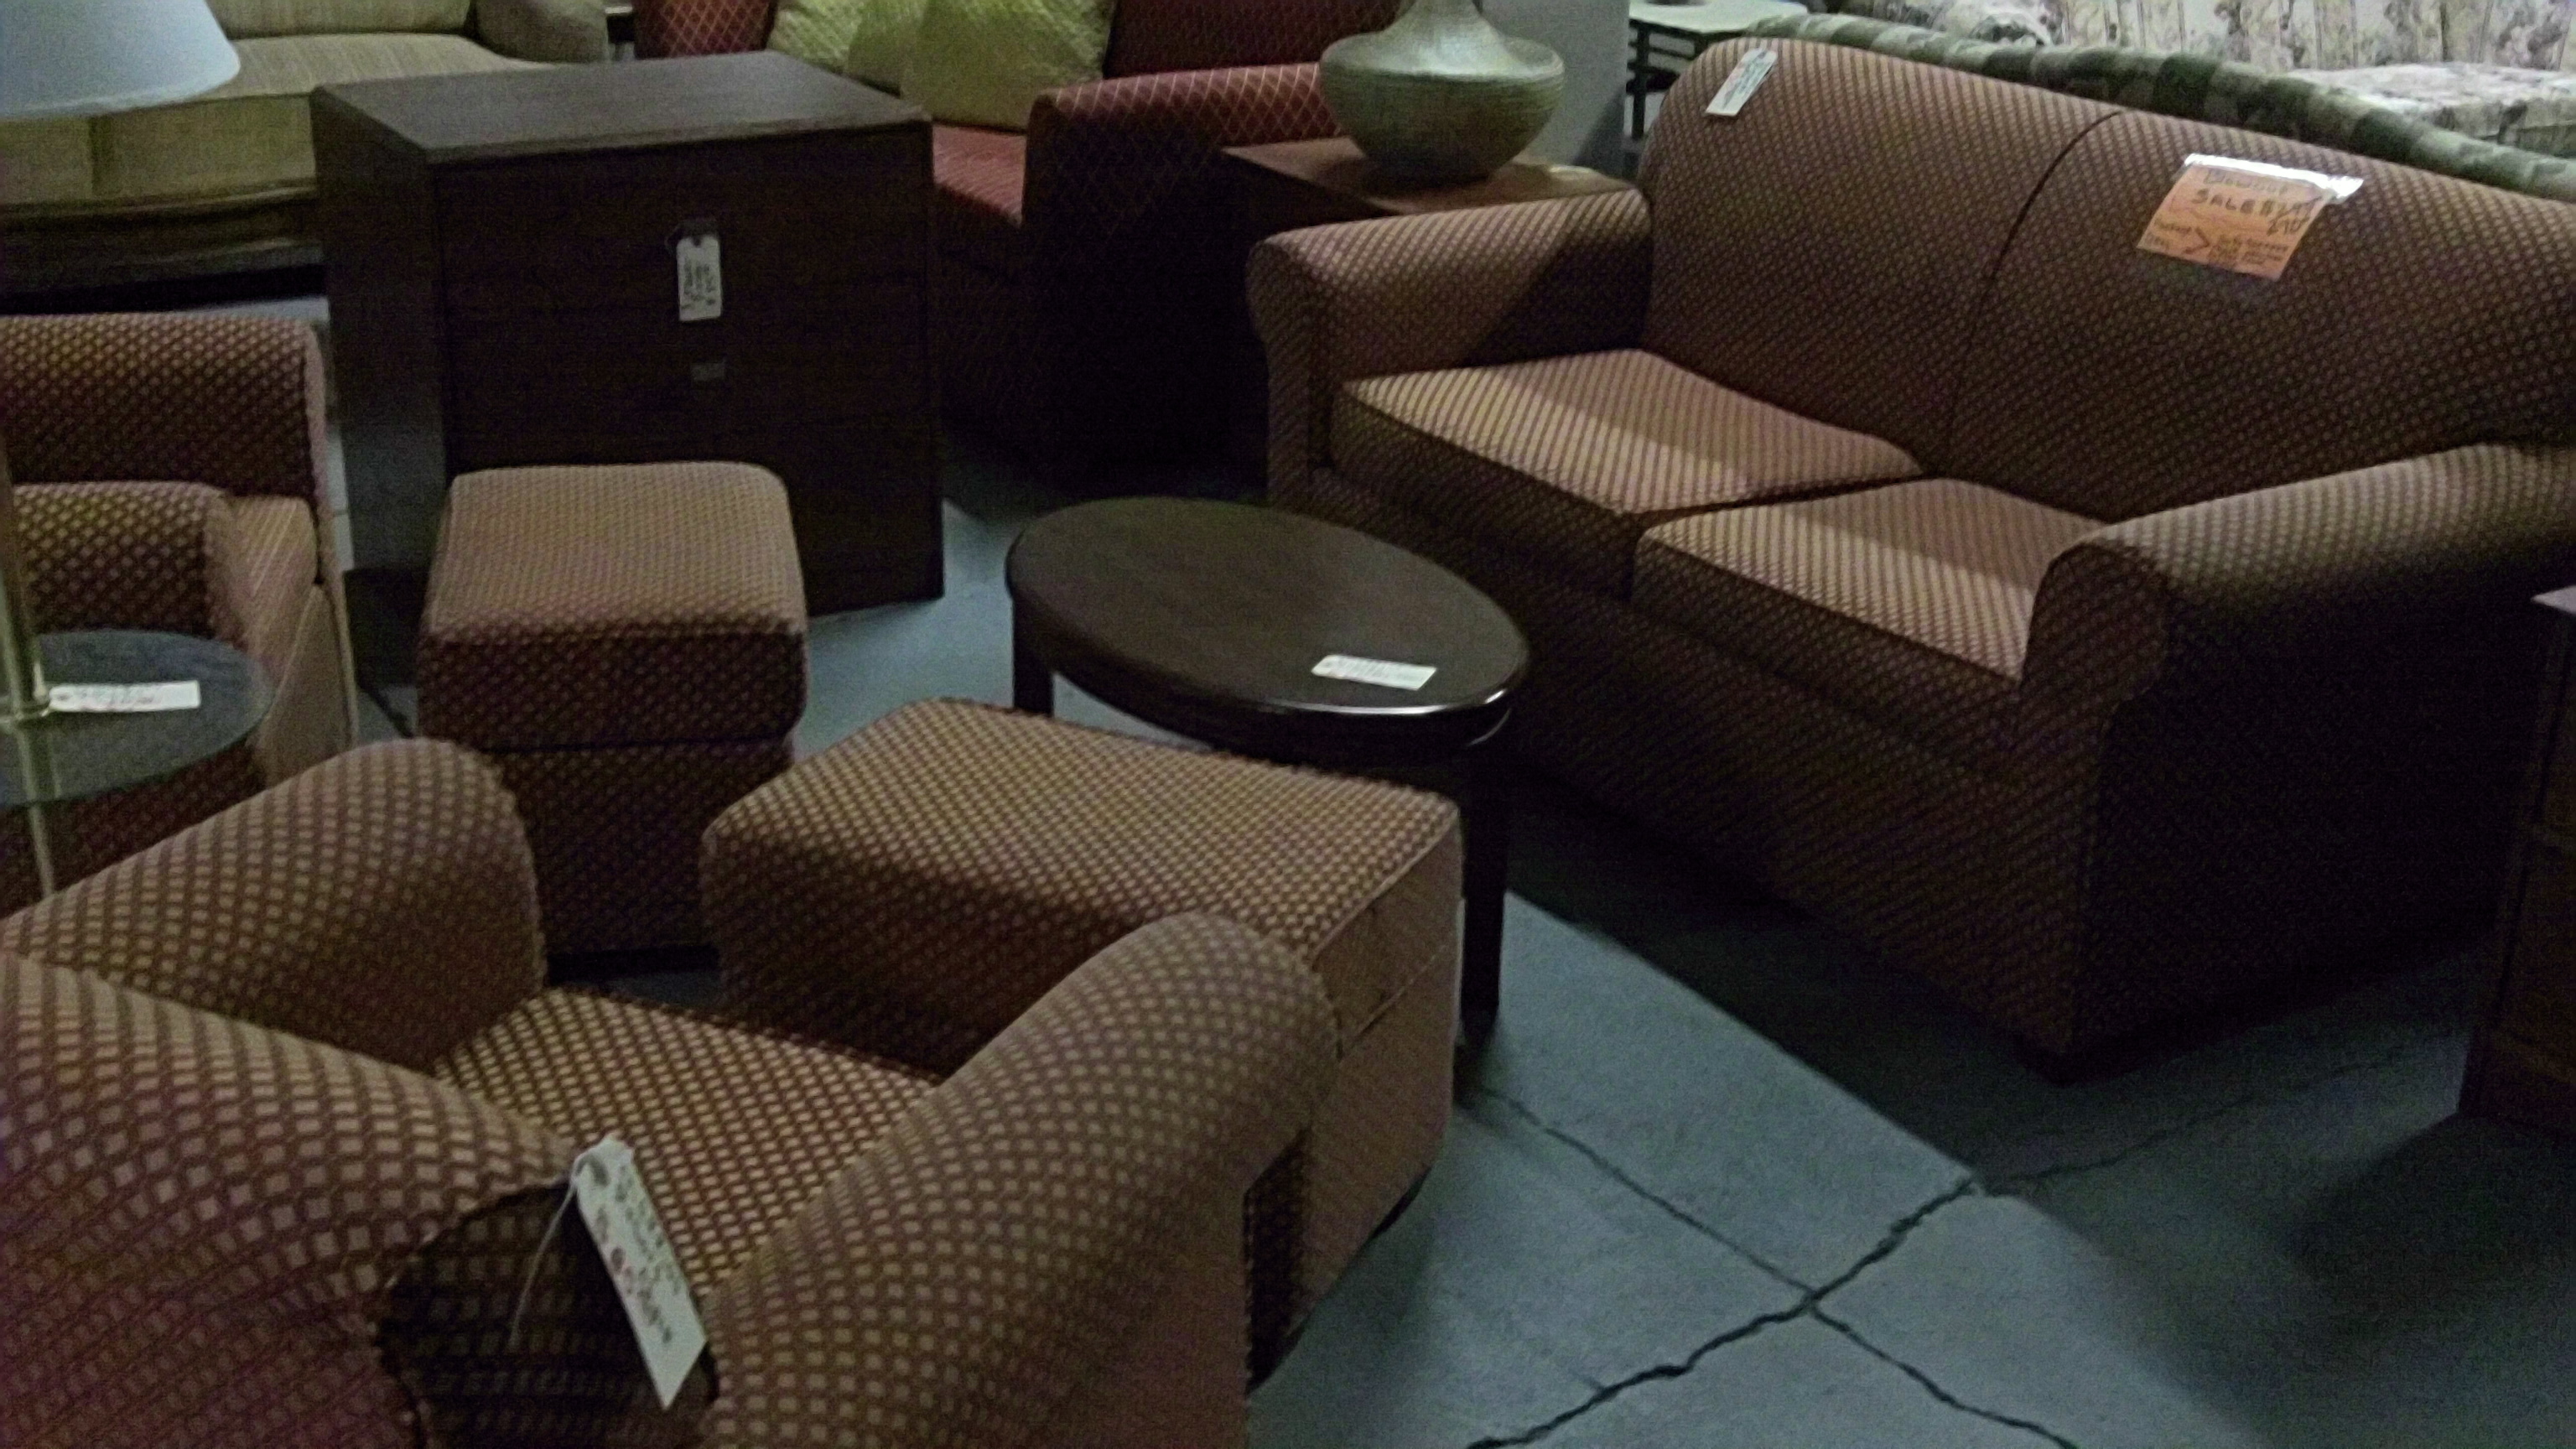 5 piece living room furniture sets